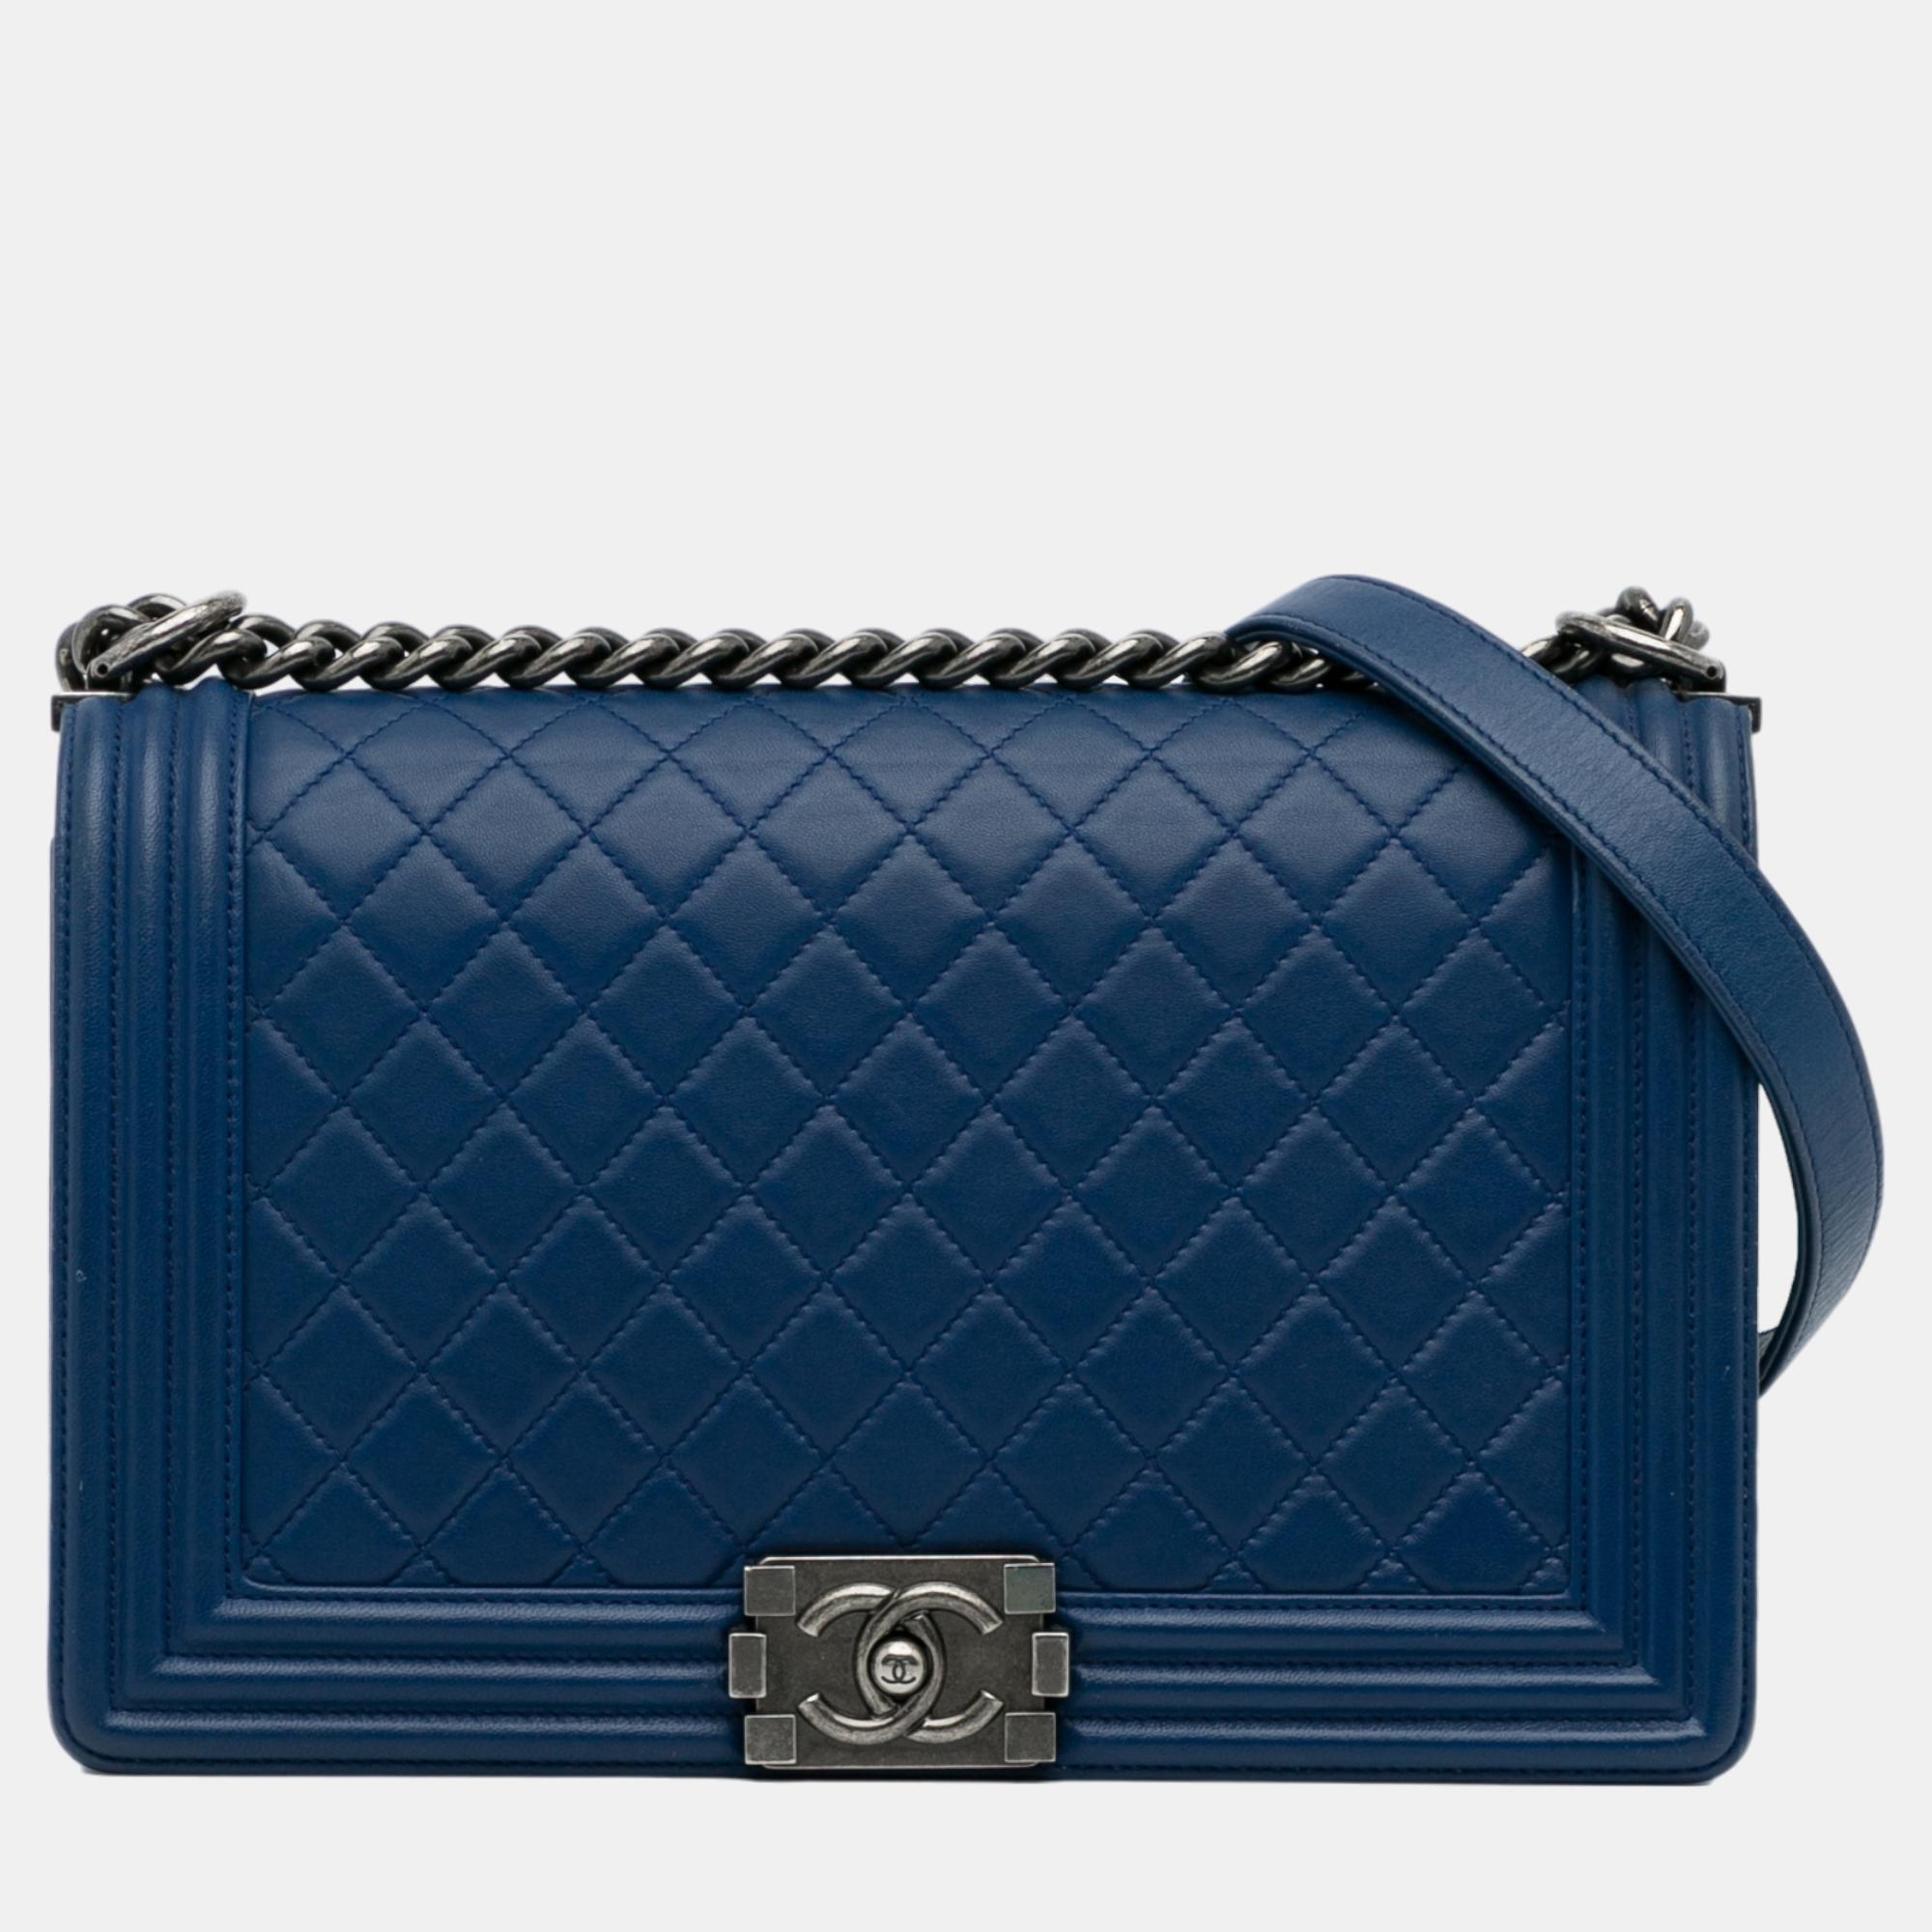 Chanel Blue Medium Lambskin Boy Flap Bag